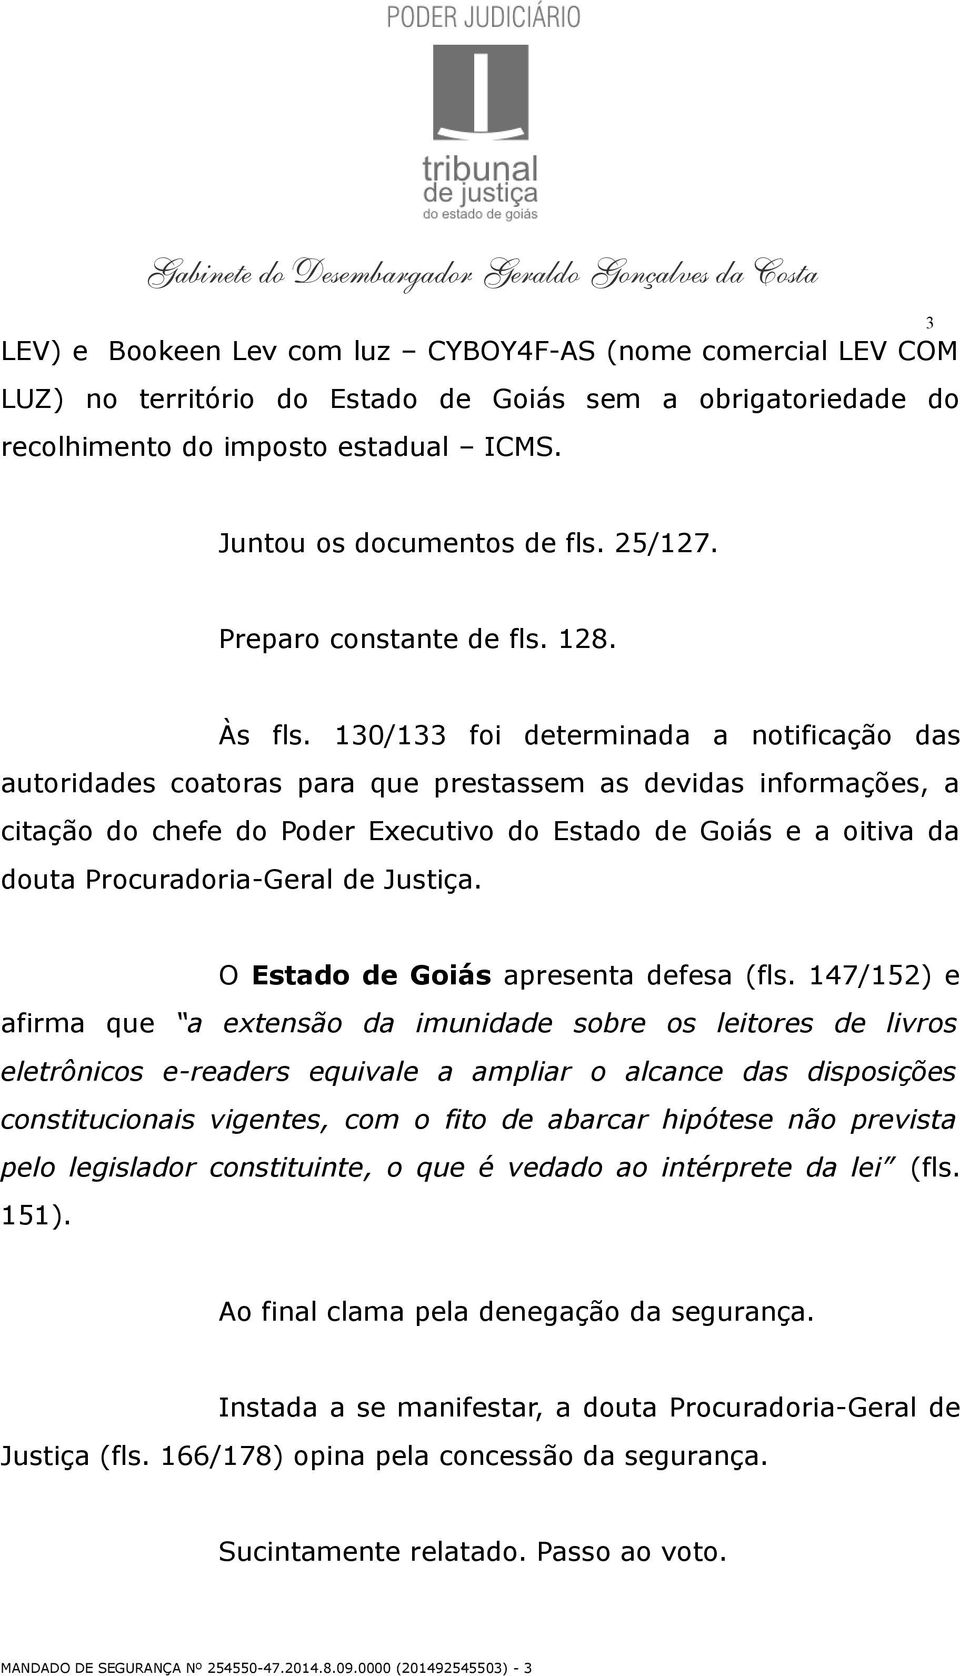 130/133 foi determinada a notificação das autoridades coatoras para que prestassem as devidas informações, a citação do chefe do Poder Executivo do Estado de Goiás e a oitiva da douta